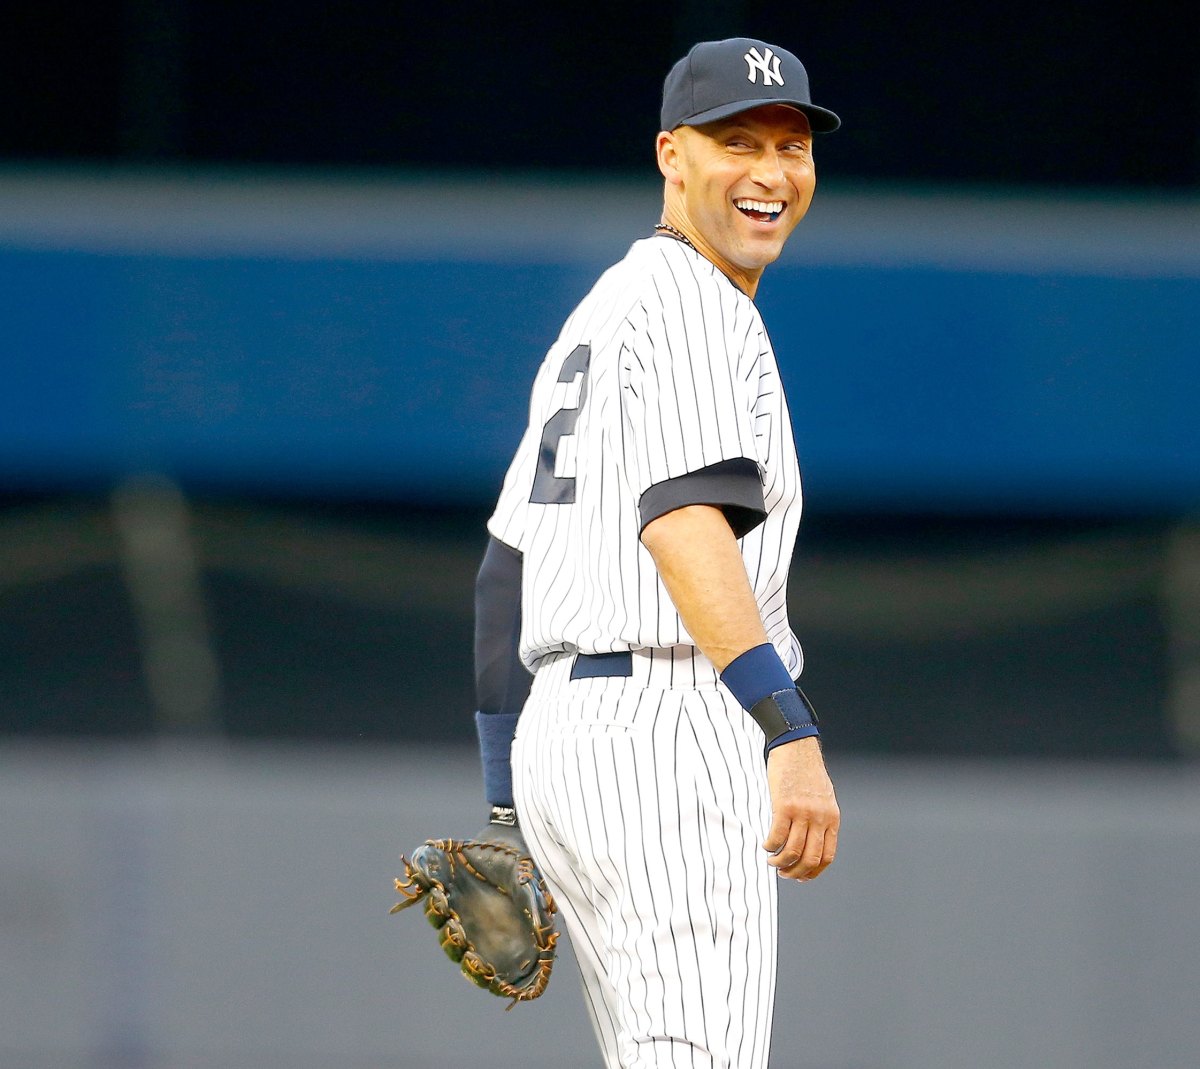 Derek Jeter's number retirement ceremony was peak Yankees